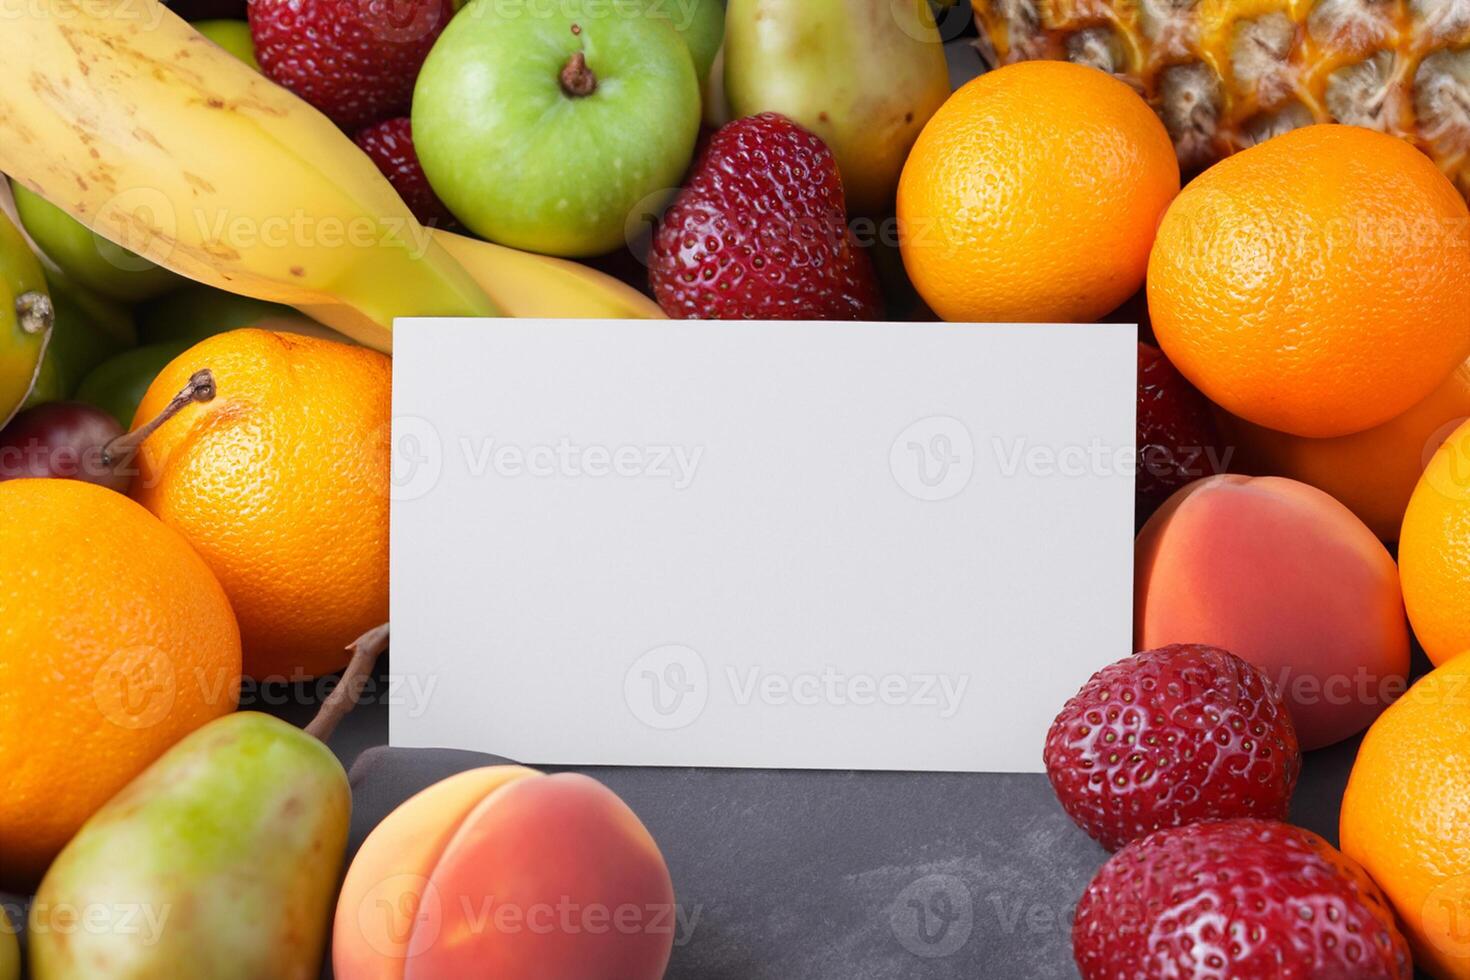 kaart en wit papier mockup geharmoniseerd met vers fruit, bouwen een zichtbaar symfonie van listig ontwerp en culinaire vreugde, waar gezond ingrediënten samenvoegen in een feest van levendig beelden foto